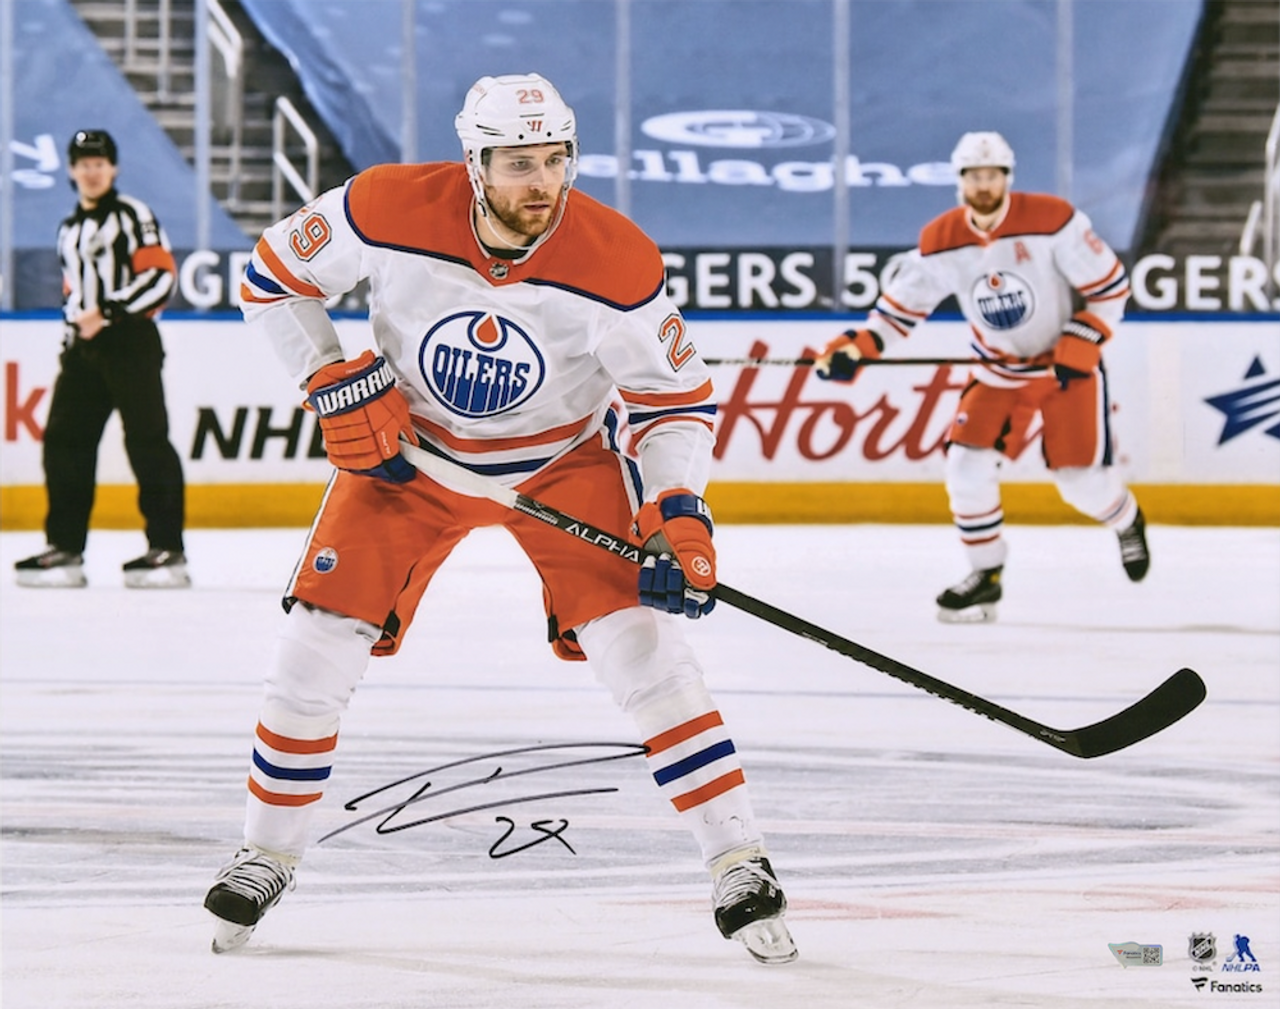 Zach Hyman Edmonton Oilers Autographed Fanatics Authentic Royal